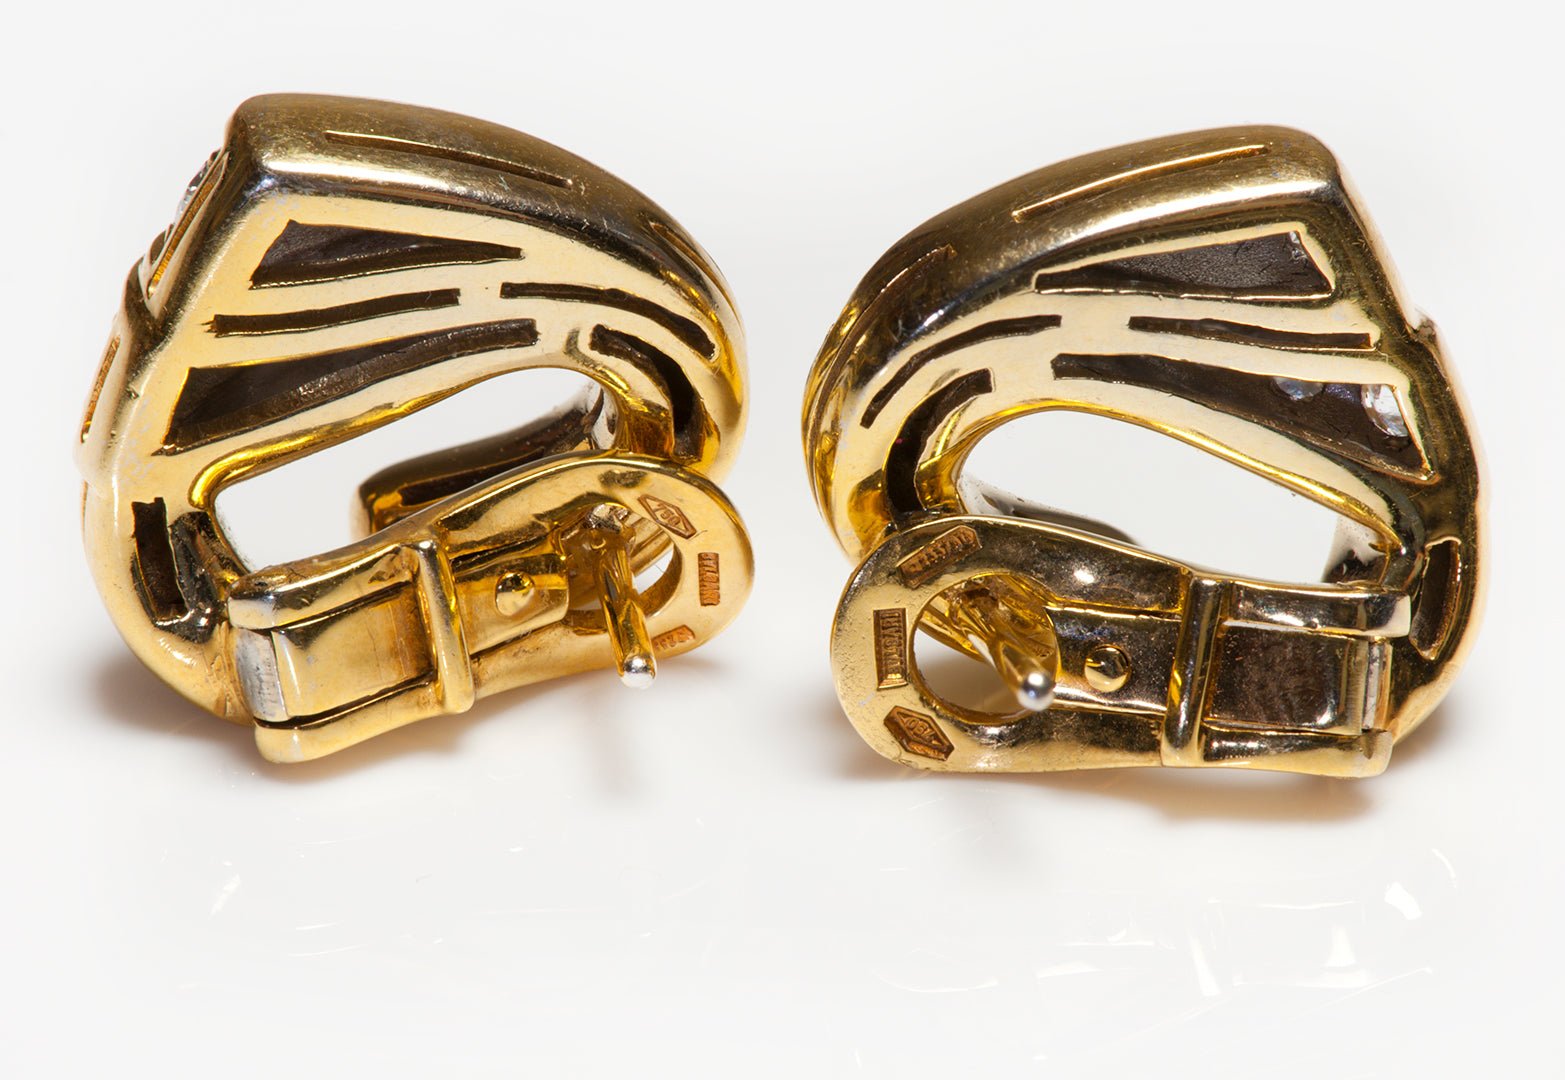 Bulgari 18K Gold Diamond Heart Earrings - DSF Antique Jewelry